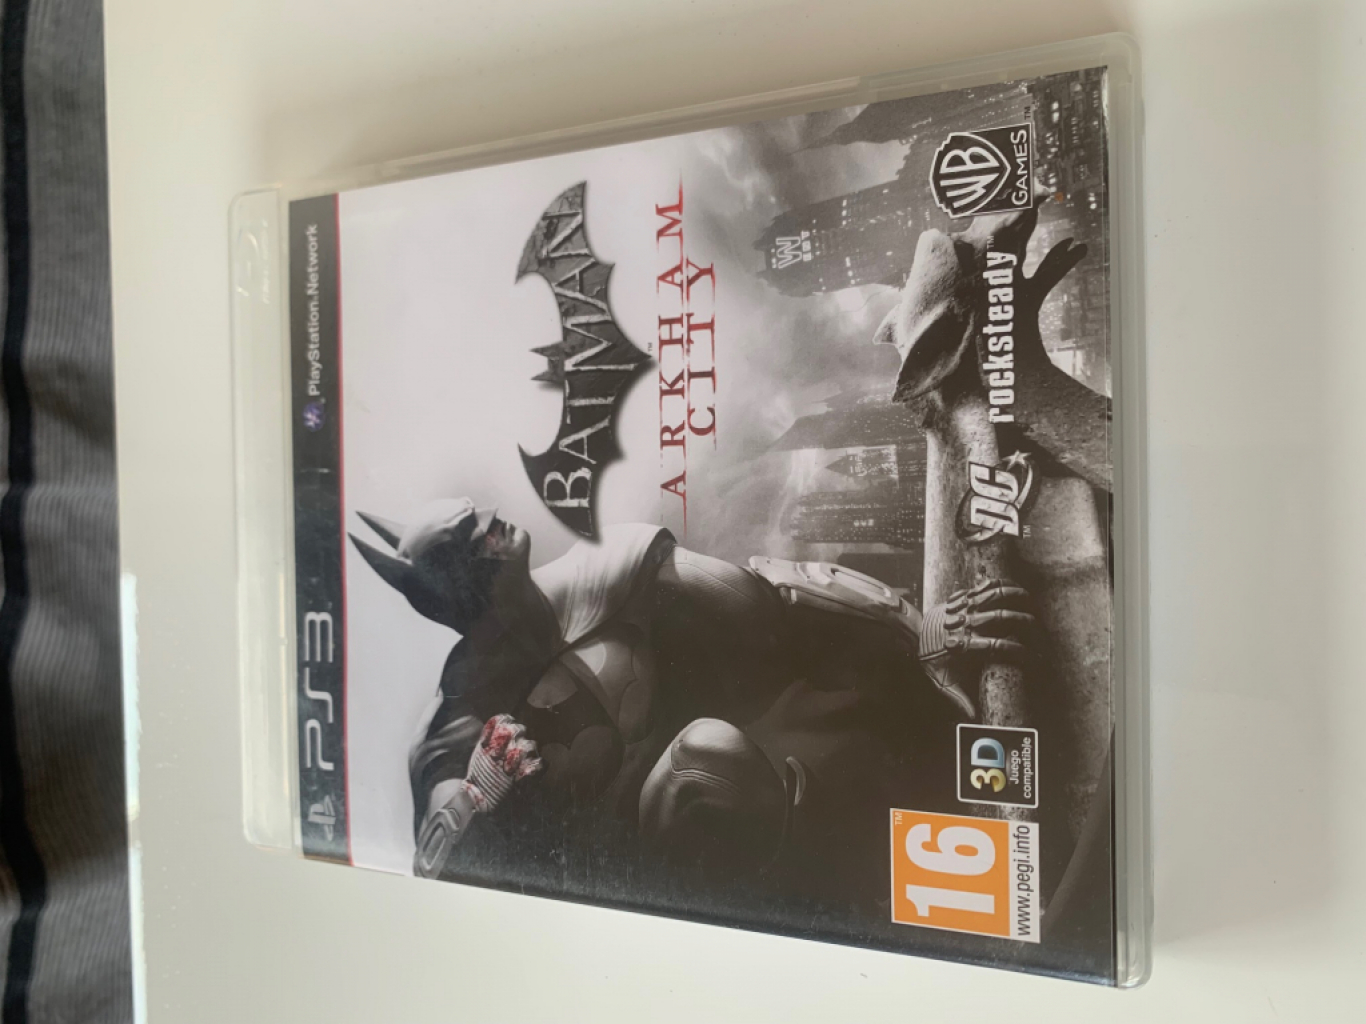 ᐅ GAMIMBO - Batman Arkham City - Ps3 de PS3 nuevo o de segunda mano